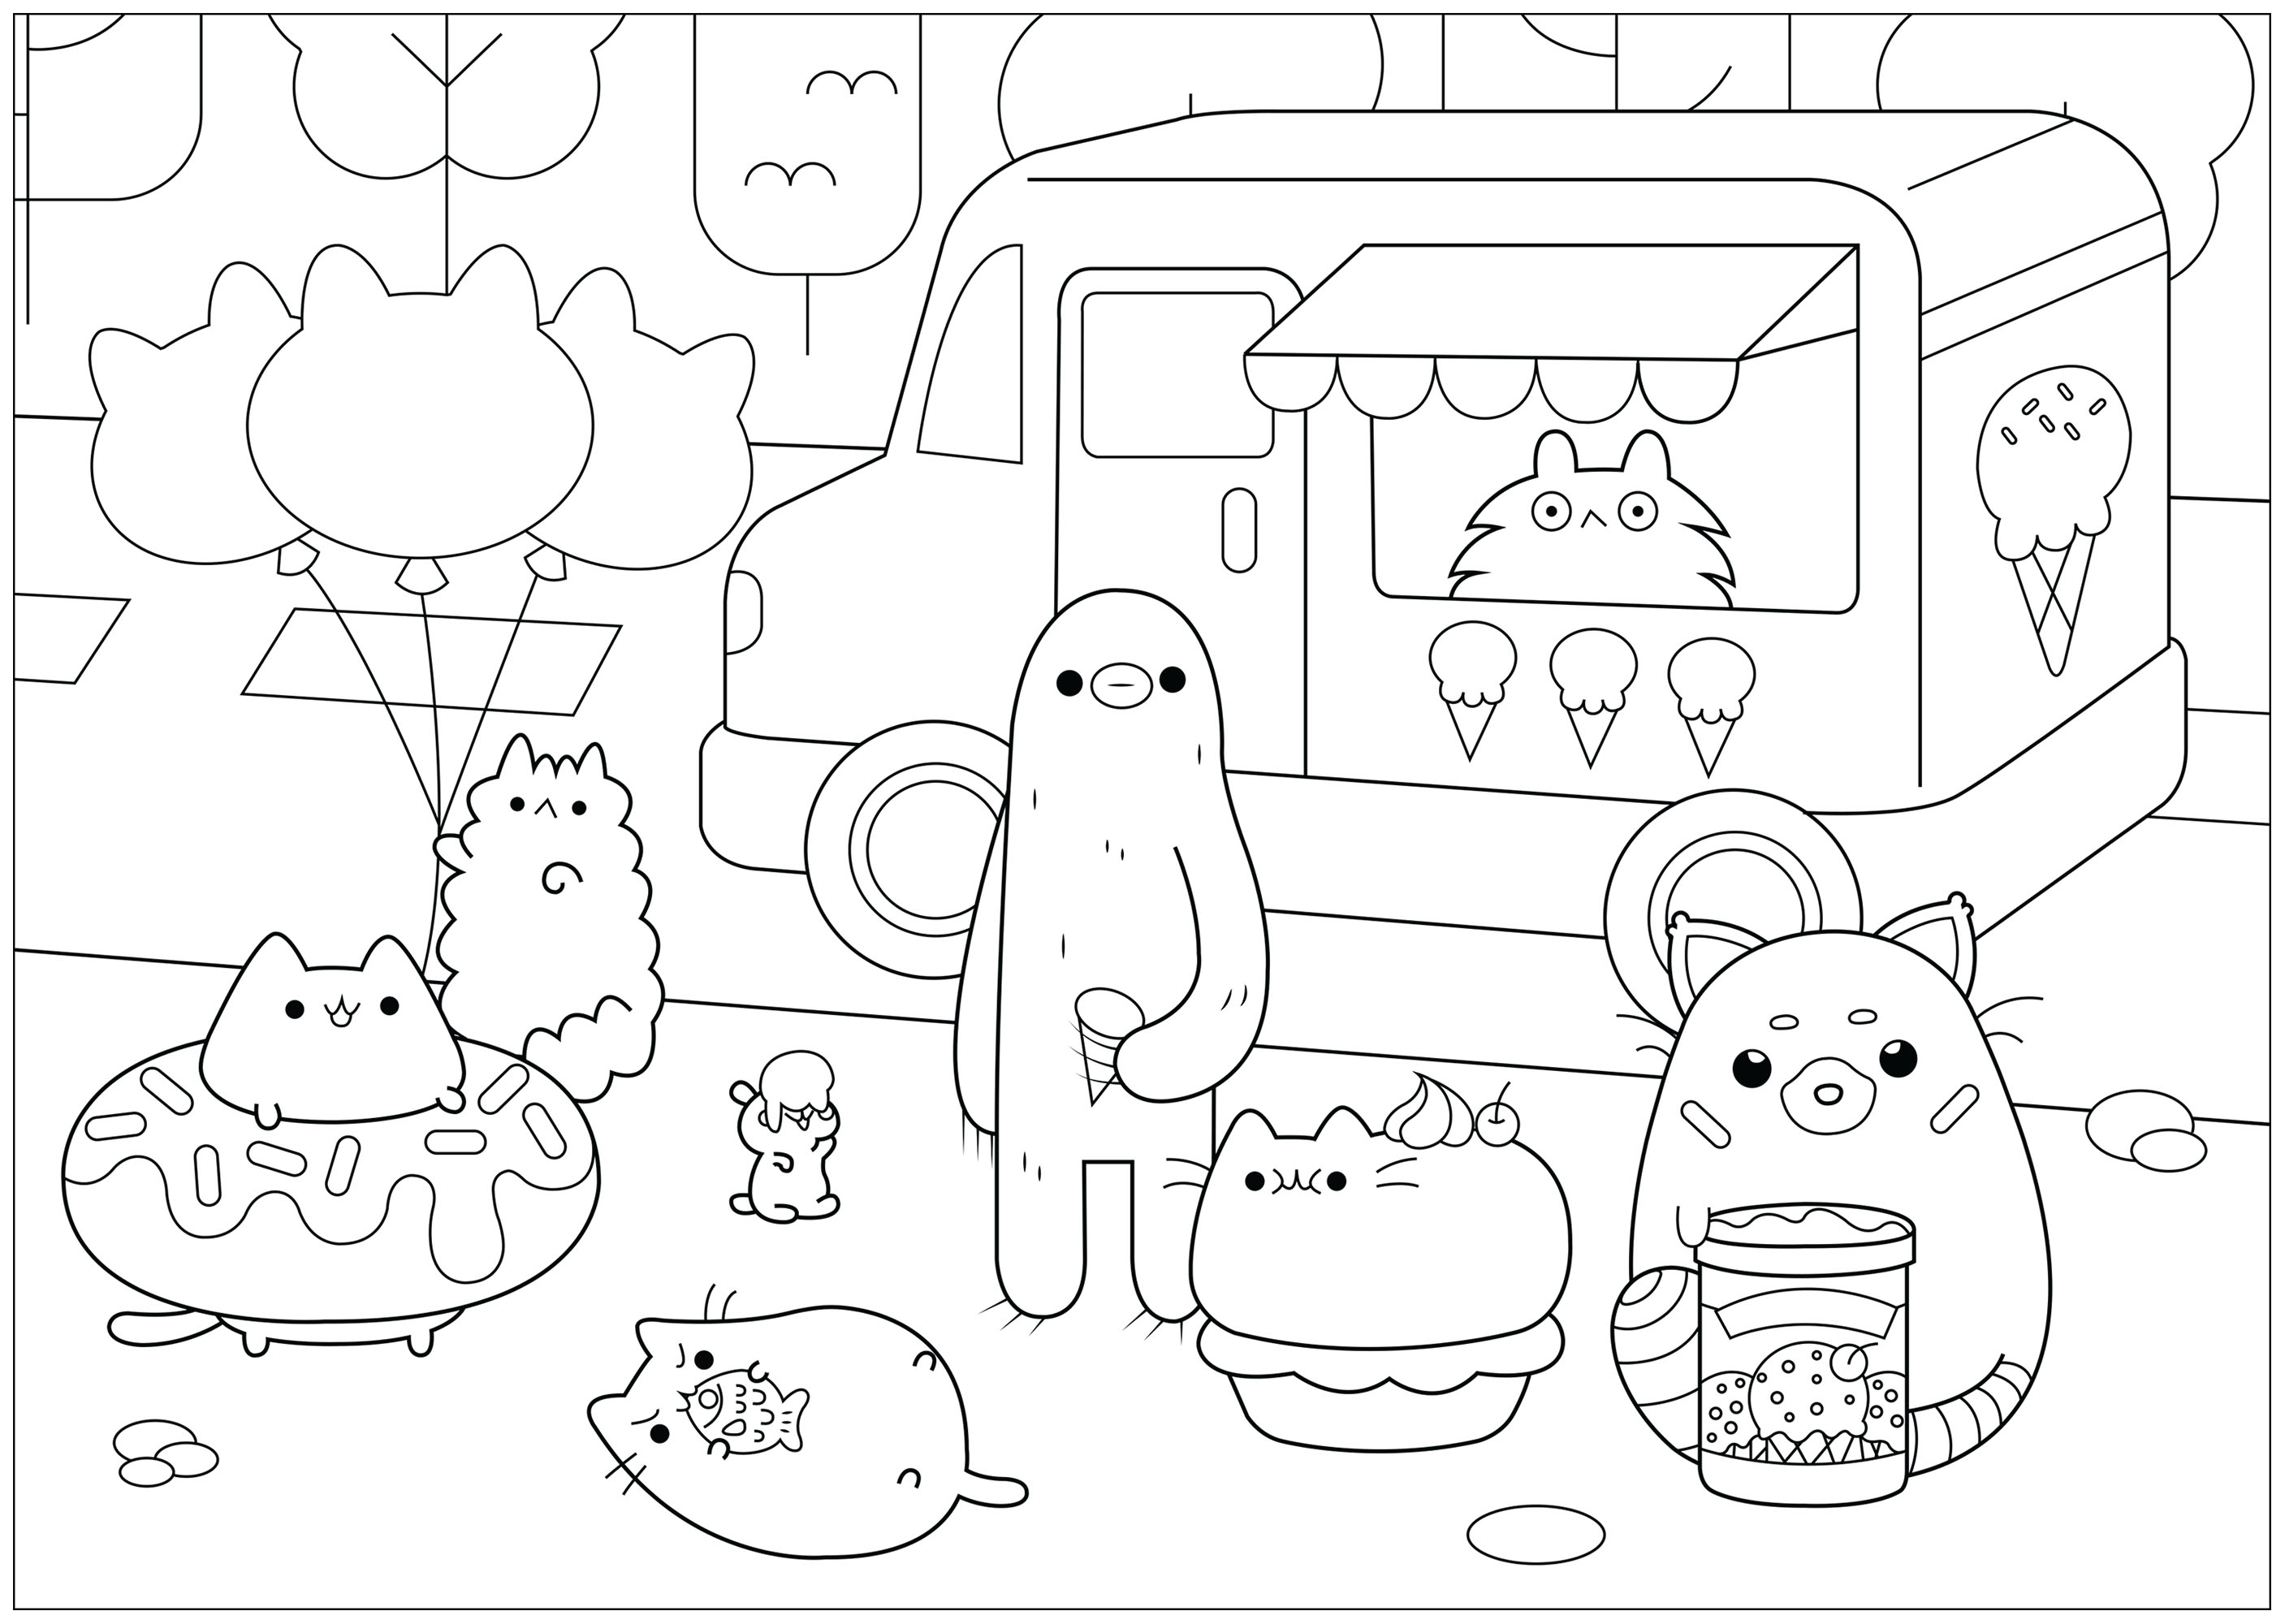 Ice cream shop Pusheen - Doodle Art / Doodling Adult ...